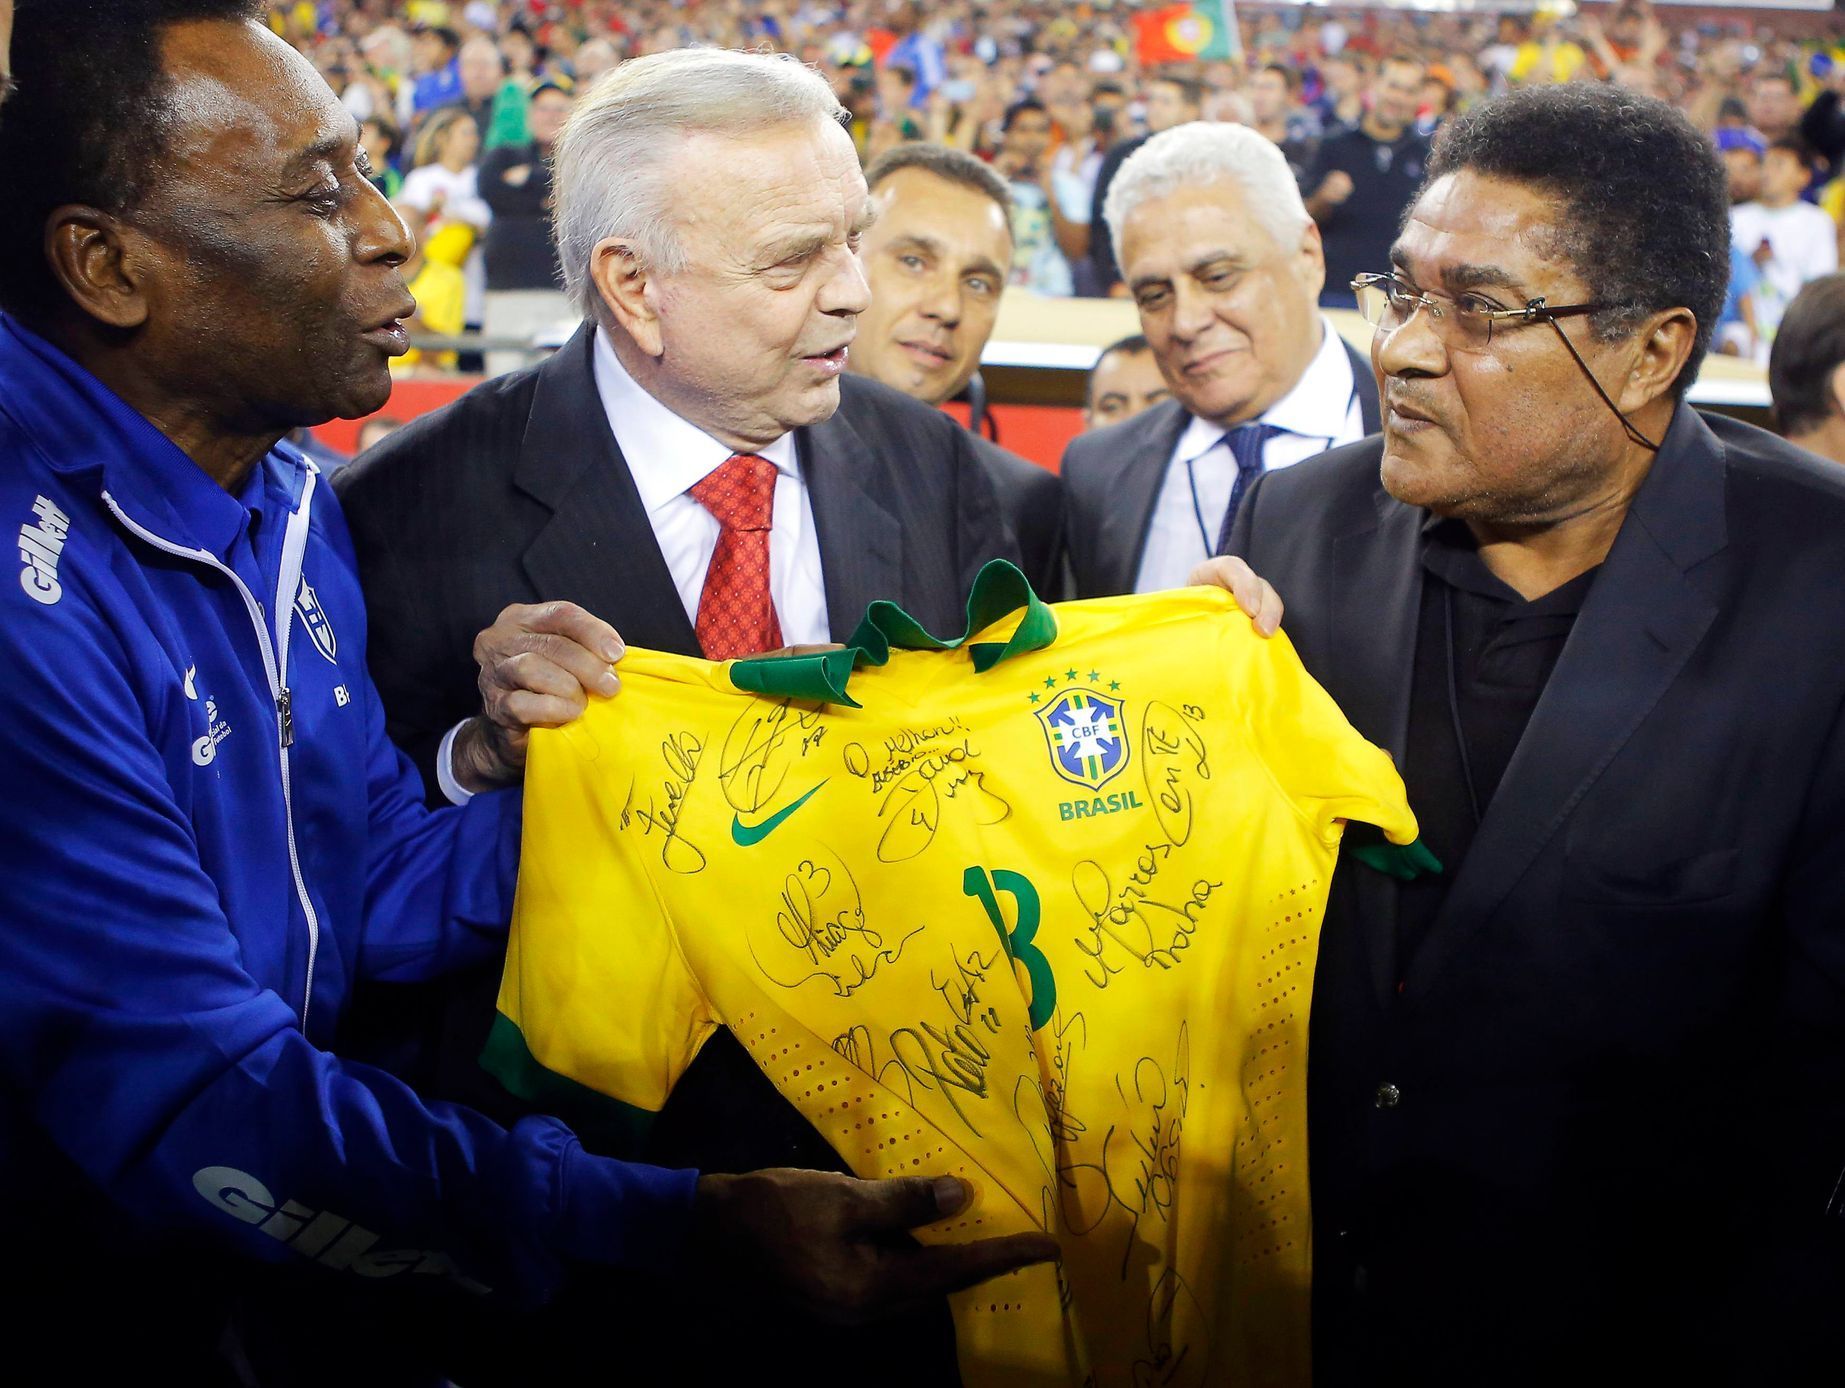 Pelé a Eusébio před přátelským zápasem Brazílie - Portugalsko